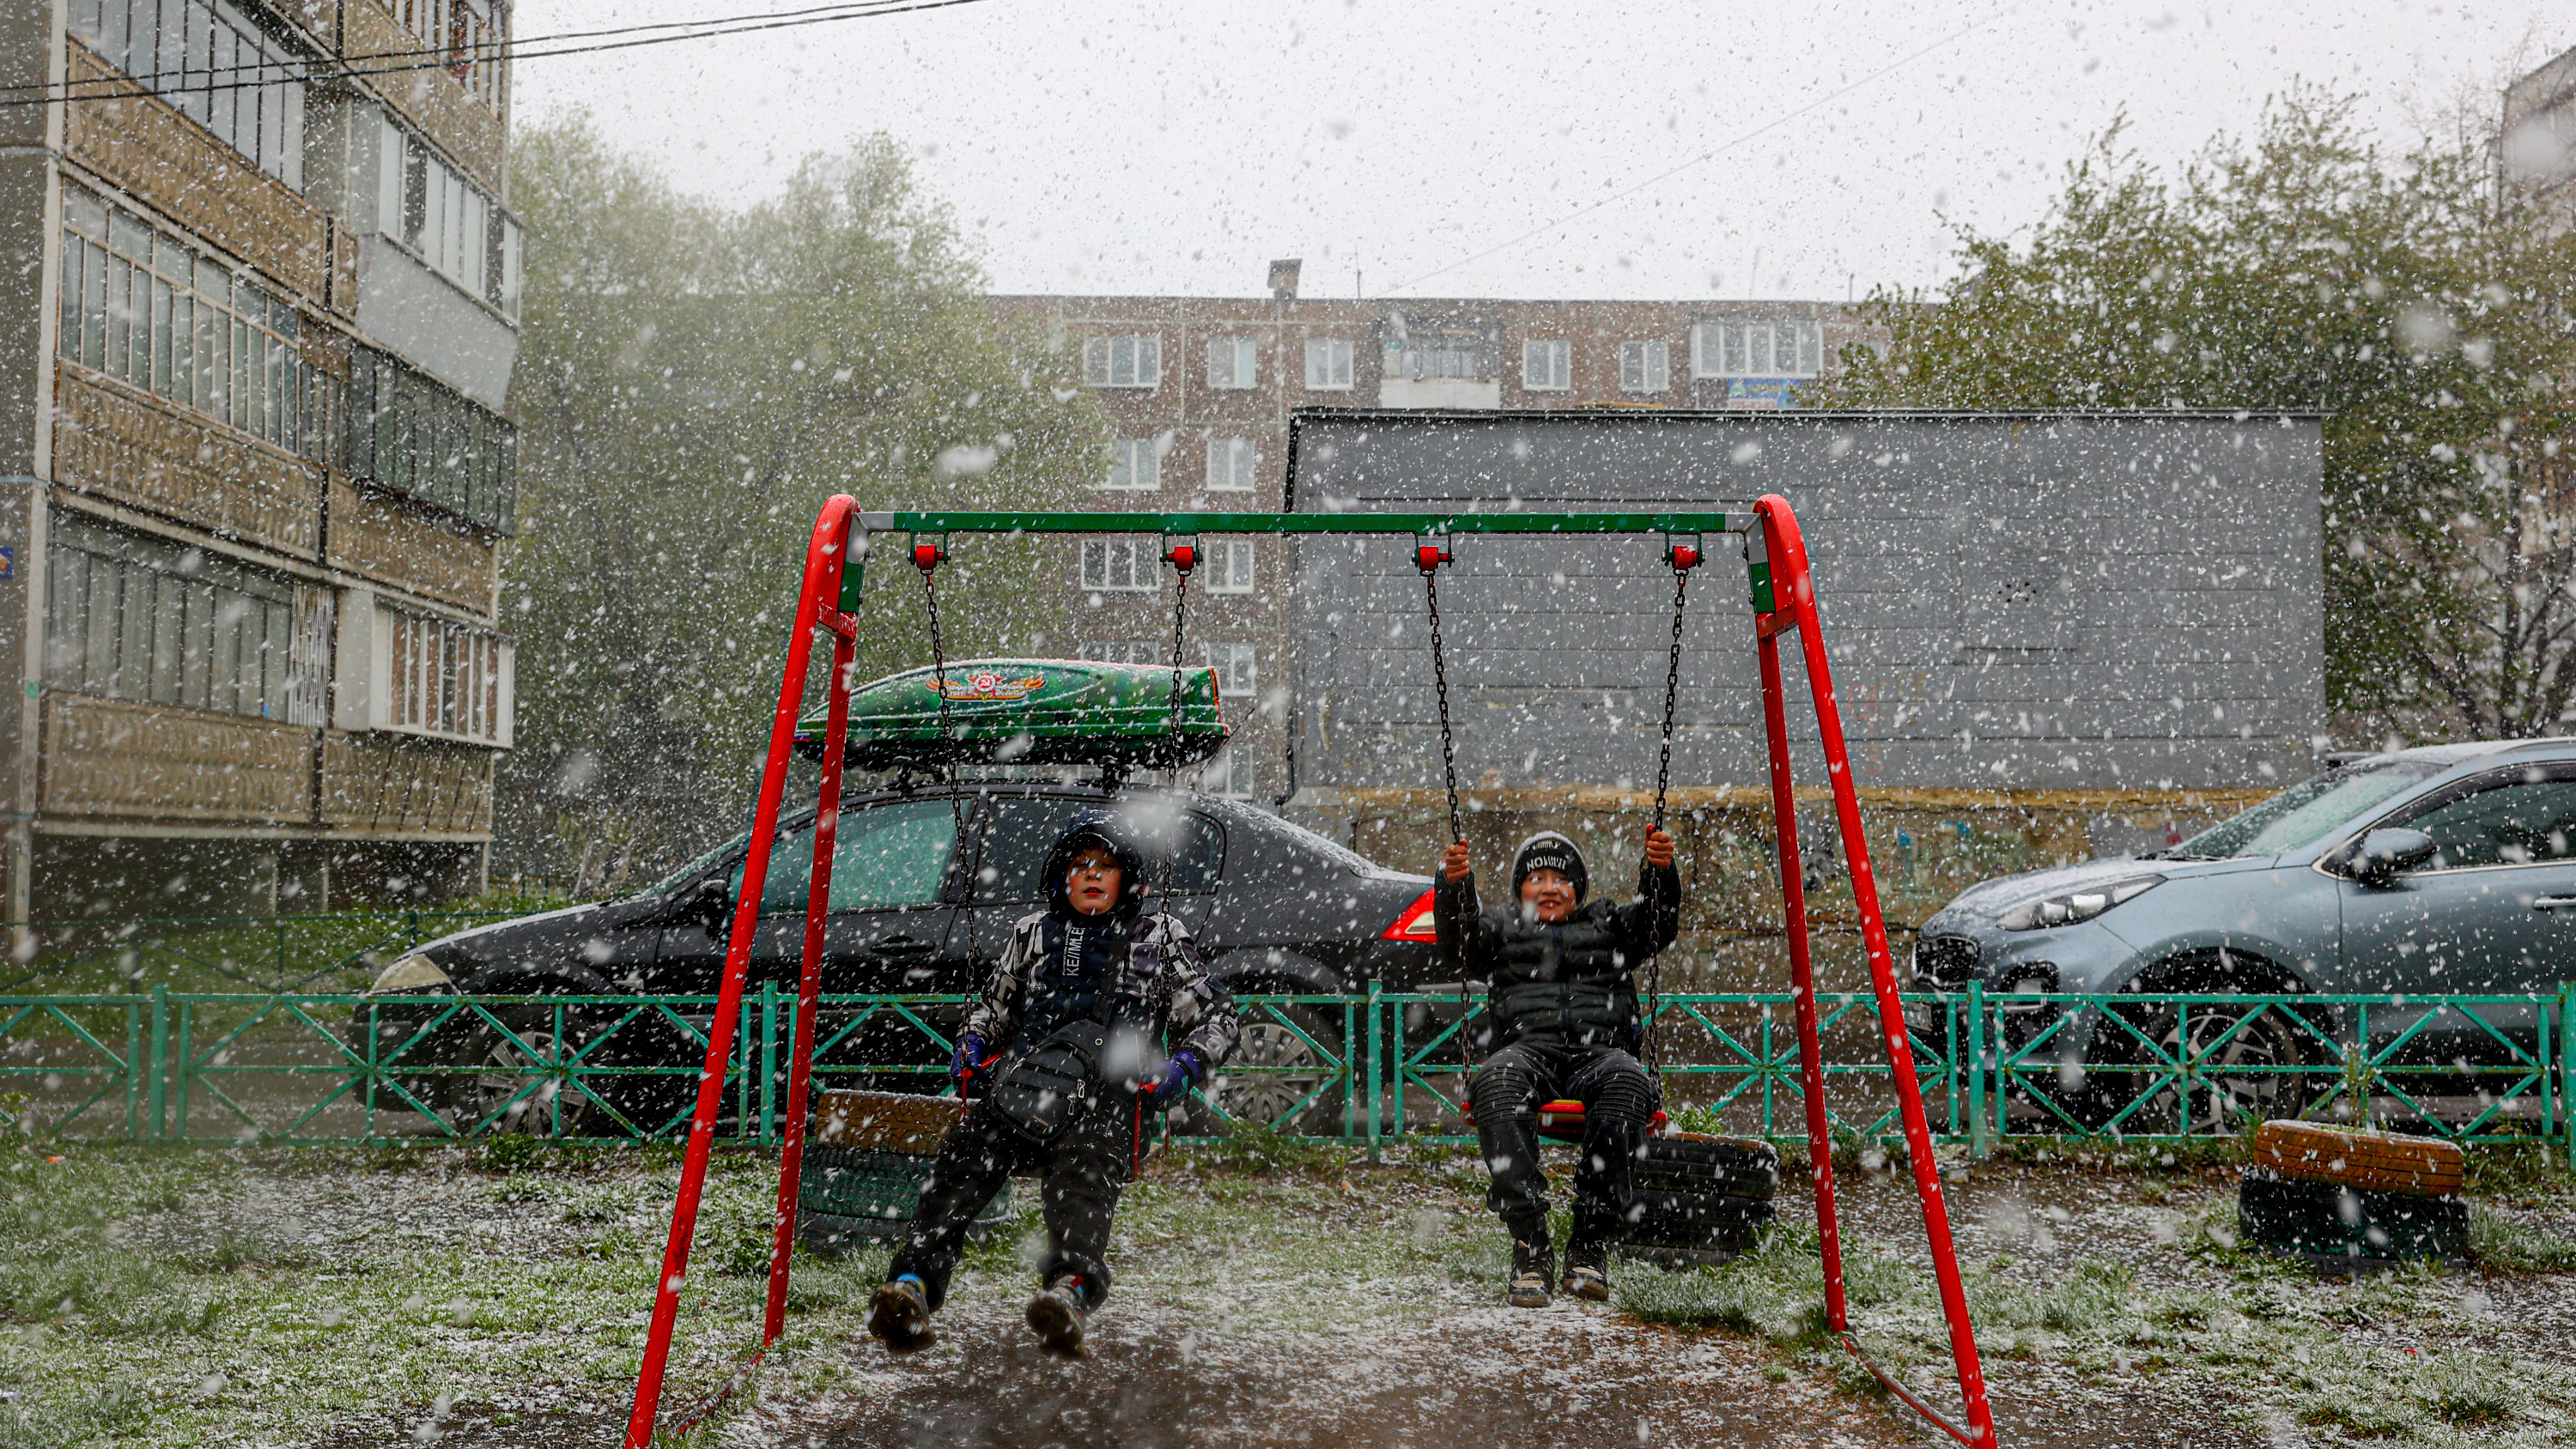 На Челябинск обрушился майский снегопад. Синоптики дали неутешительный прогноз